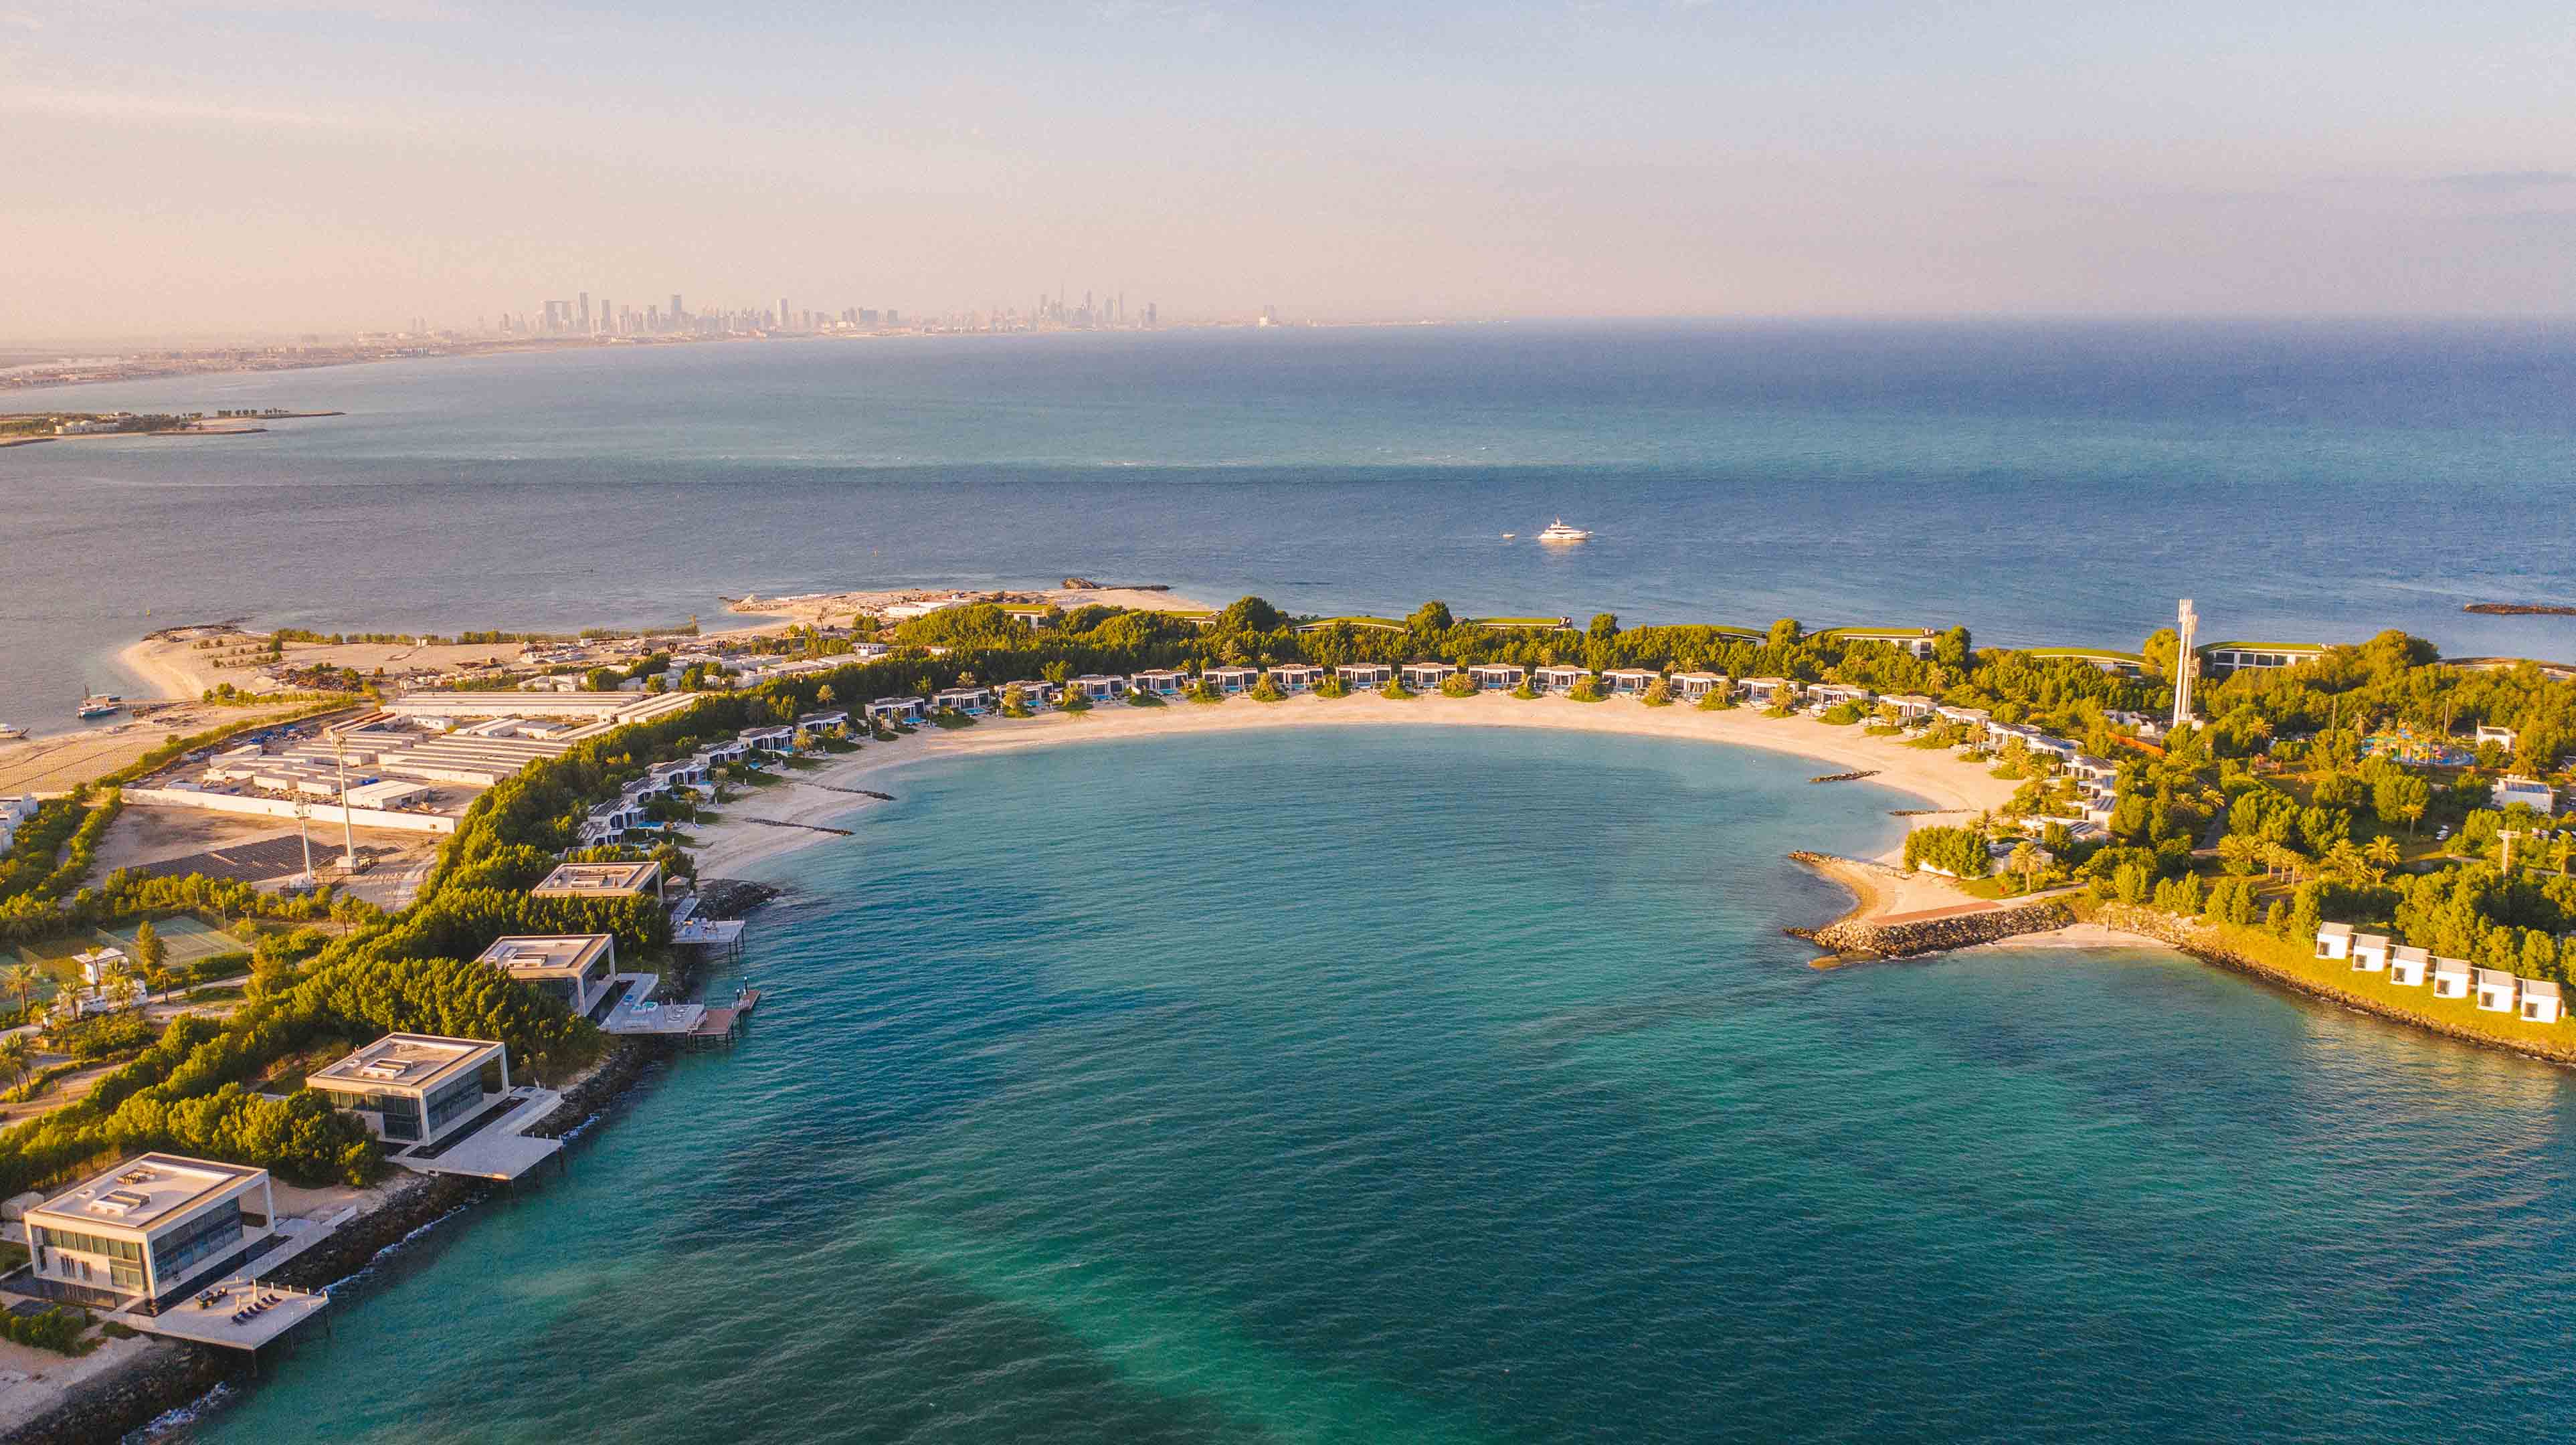 Ein luxuriöses Villenresort entlang der Bucht auf der Insel Nurai in Abu Dhabi